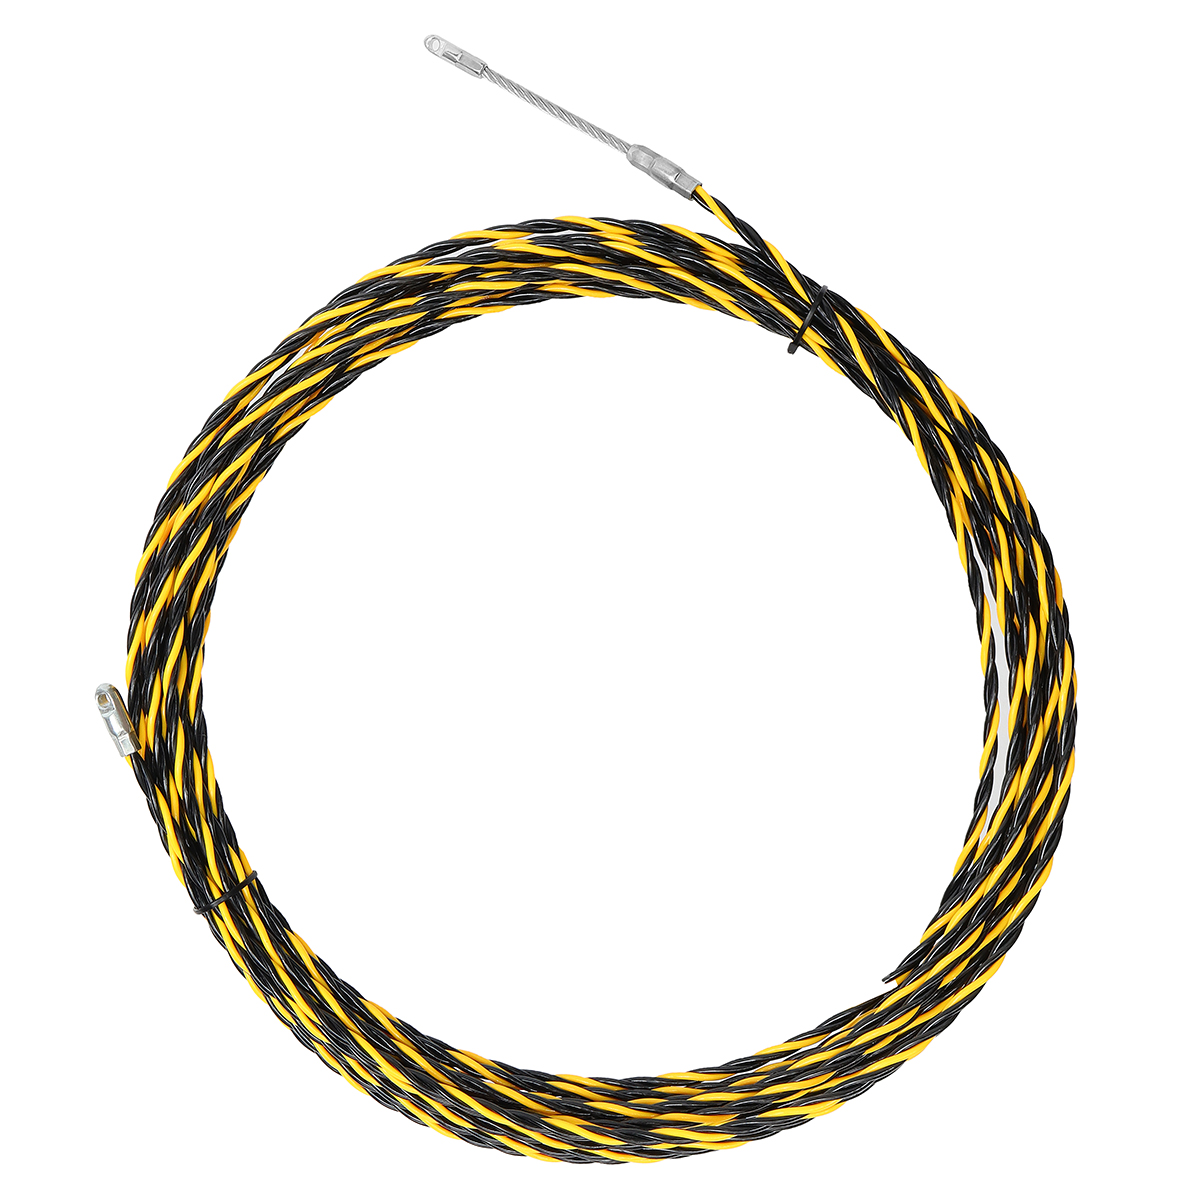 

15M 5mm Спираль Кабельный кабель для кабельного проводника Змея Кабельный наконечник Рычажная лента Провод Руководство